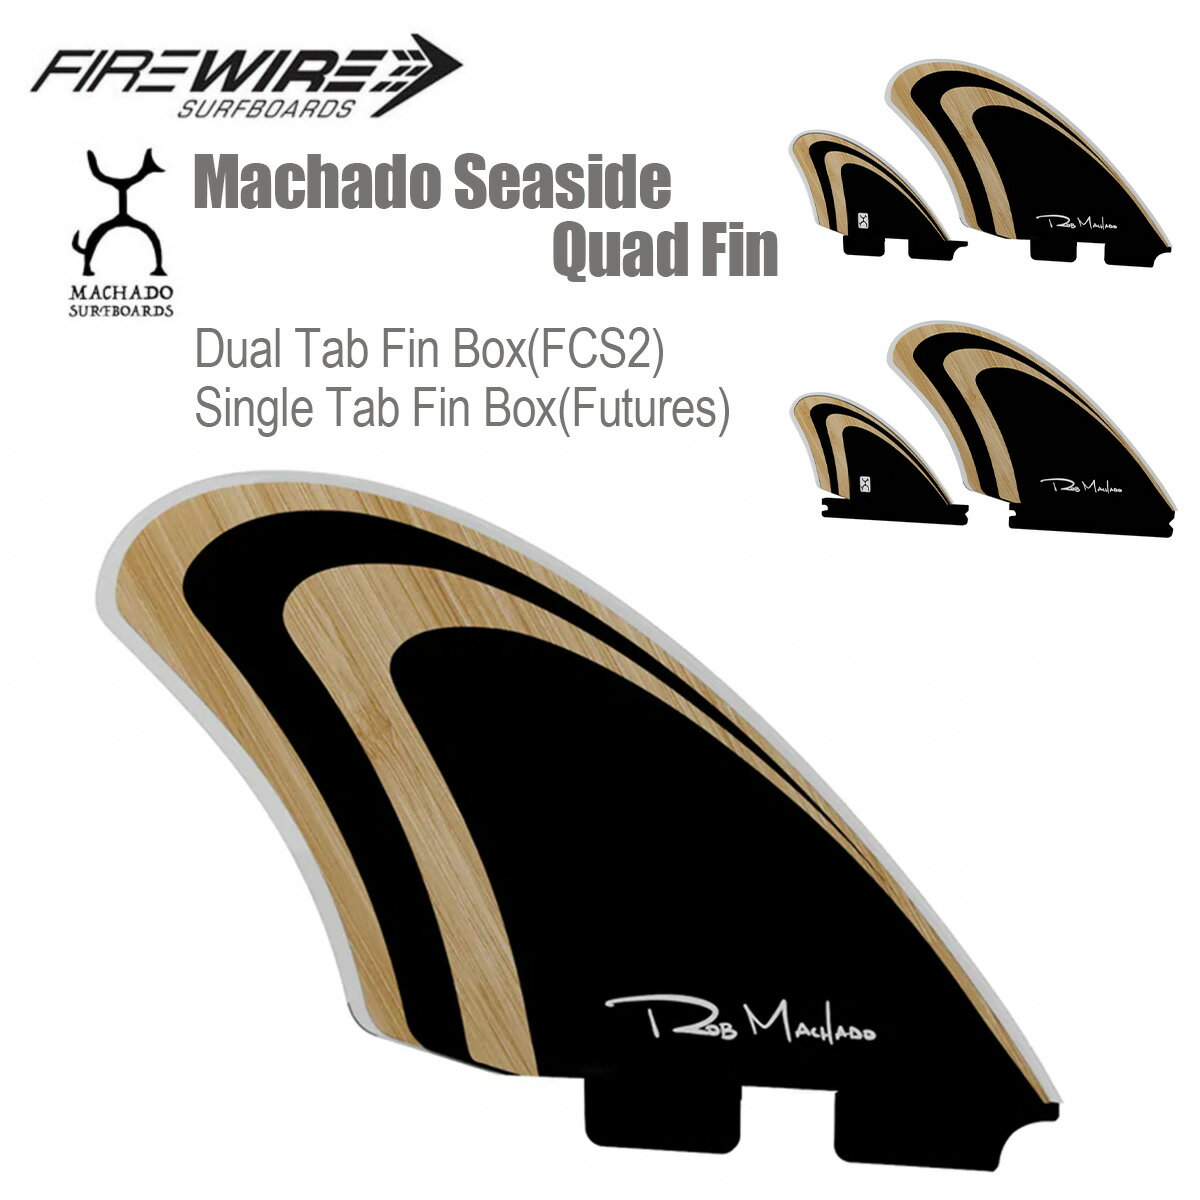 サーフィン フィン ファイヤーワイヤー ロブ・マチャド クワッドフィン FIREWIRE Rob Machado Seaside Quad Fin フューチャー用 FCS2用 4fin オールラウンド 軽量 サーフボード オリジナル 海 正規品